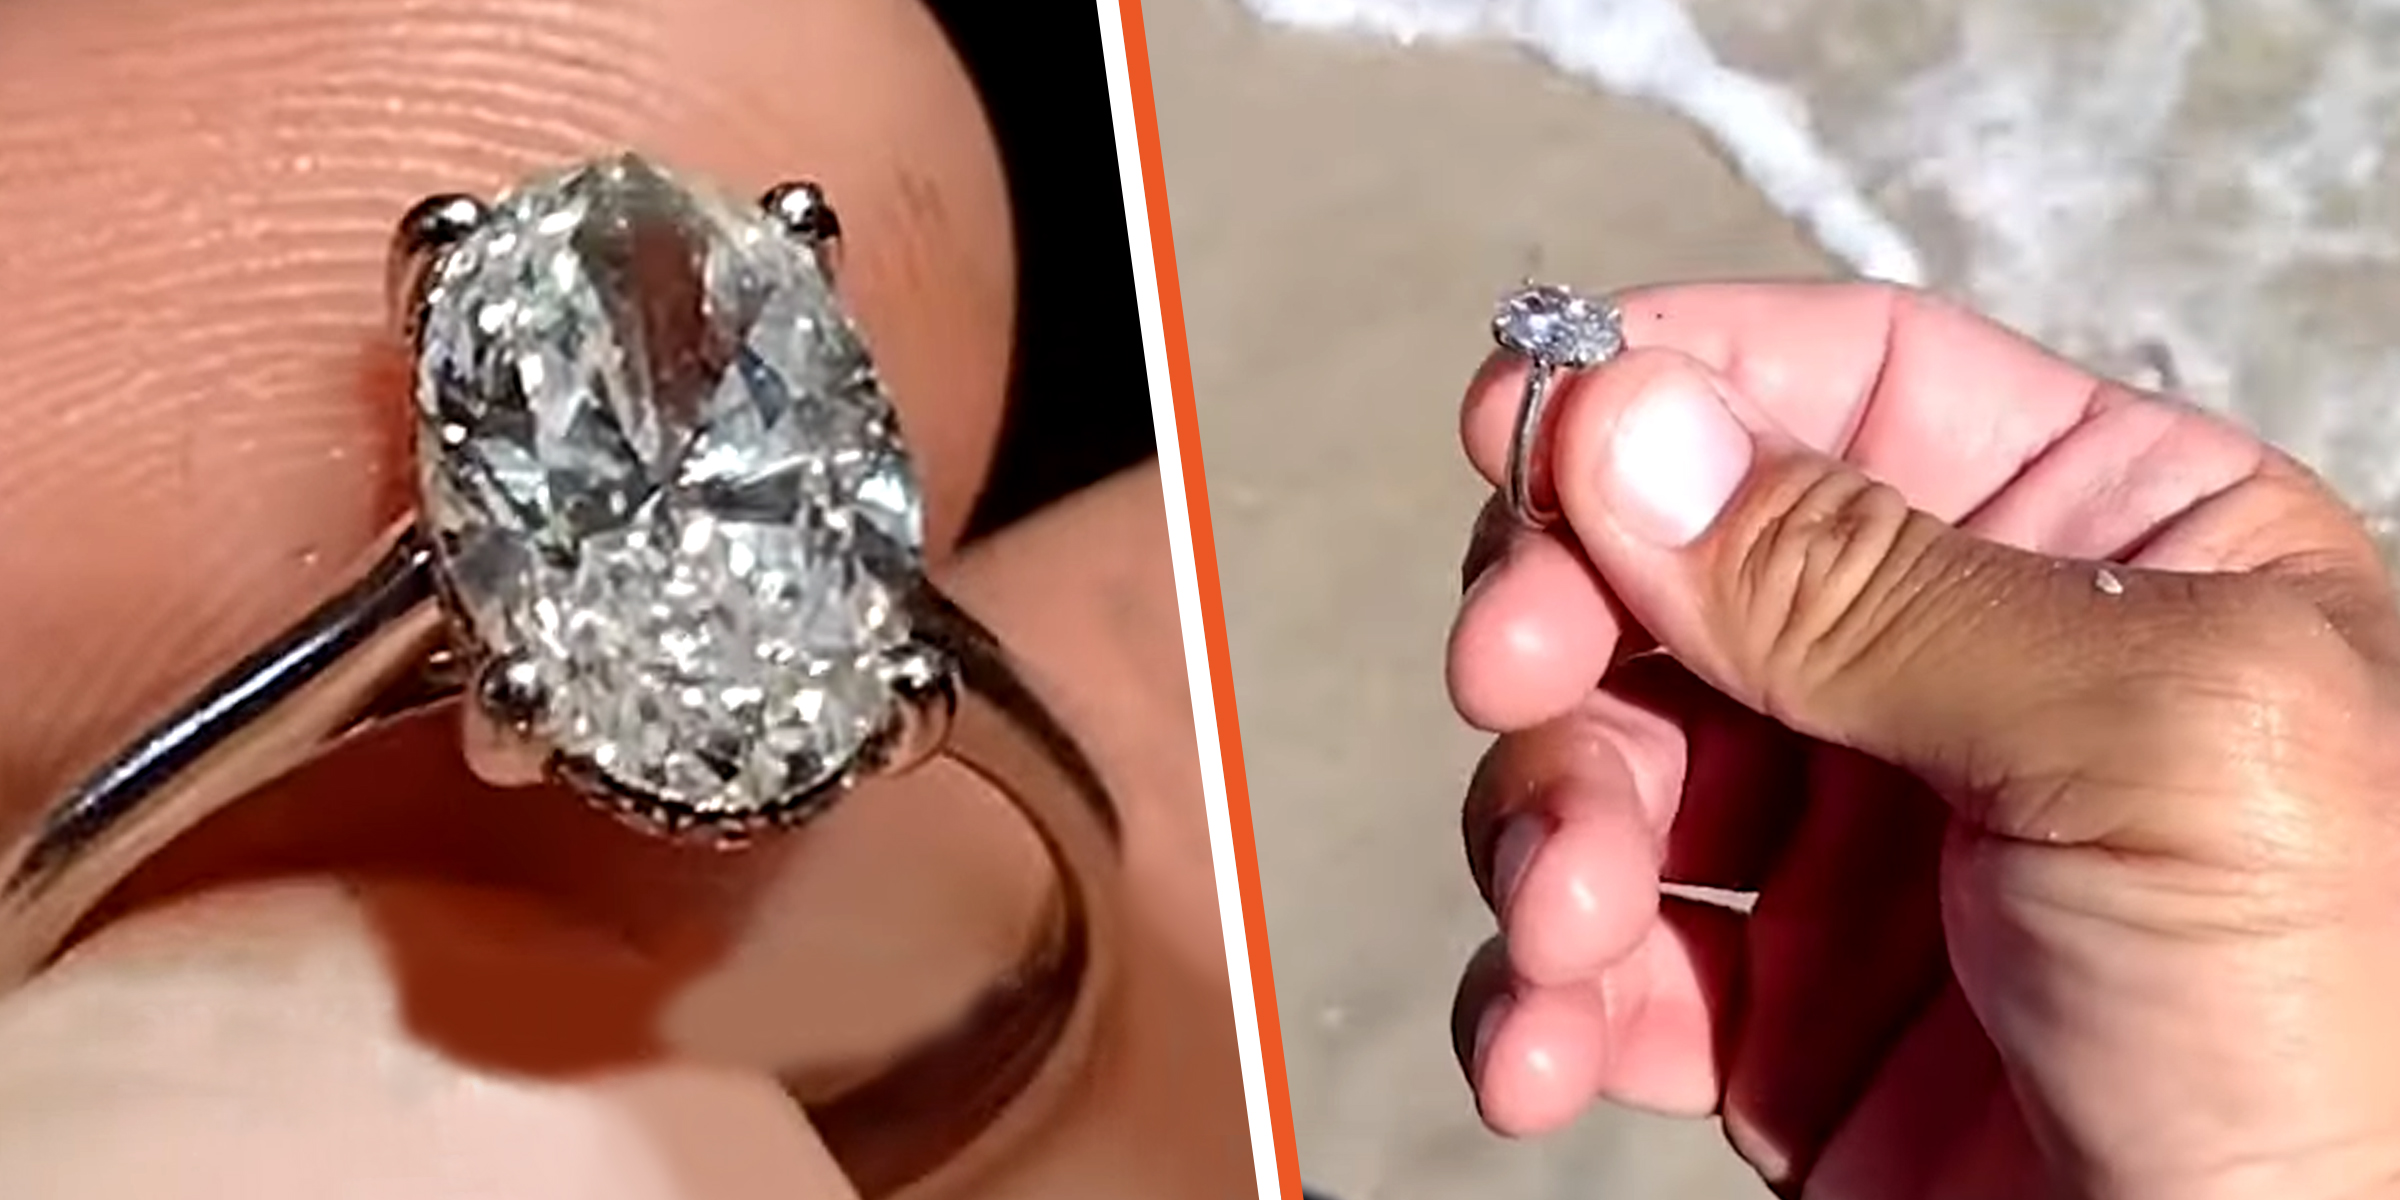 Joseph Cook hat mit seinem Metalldetektor einen Diamantring gefunden. | Quelle: youtube.com/theindependent